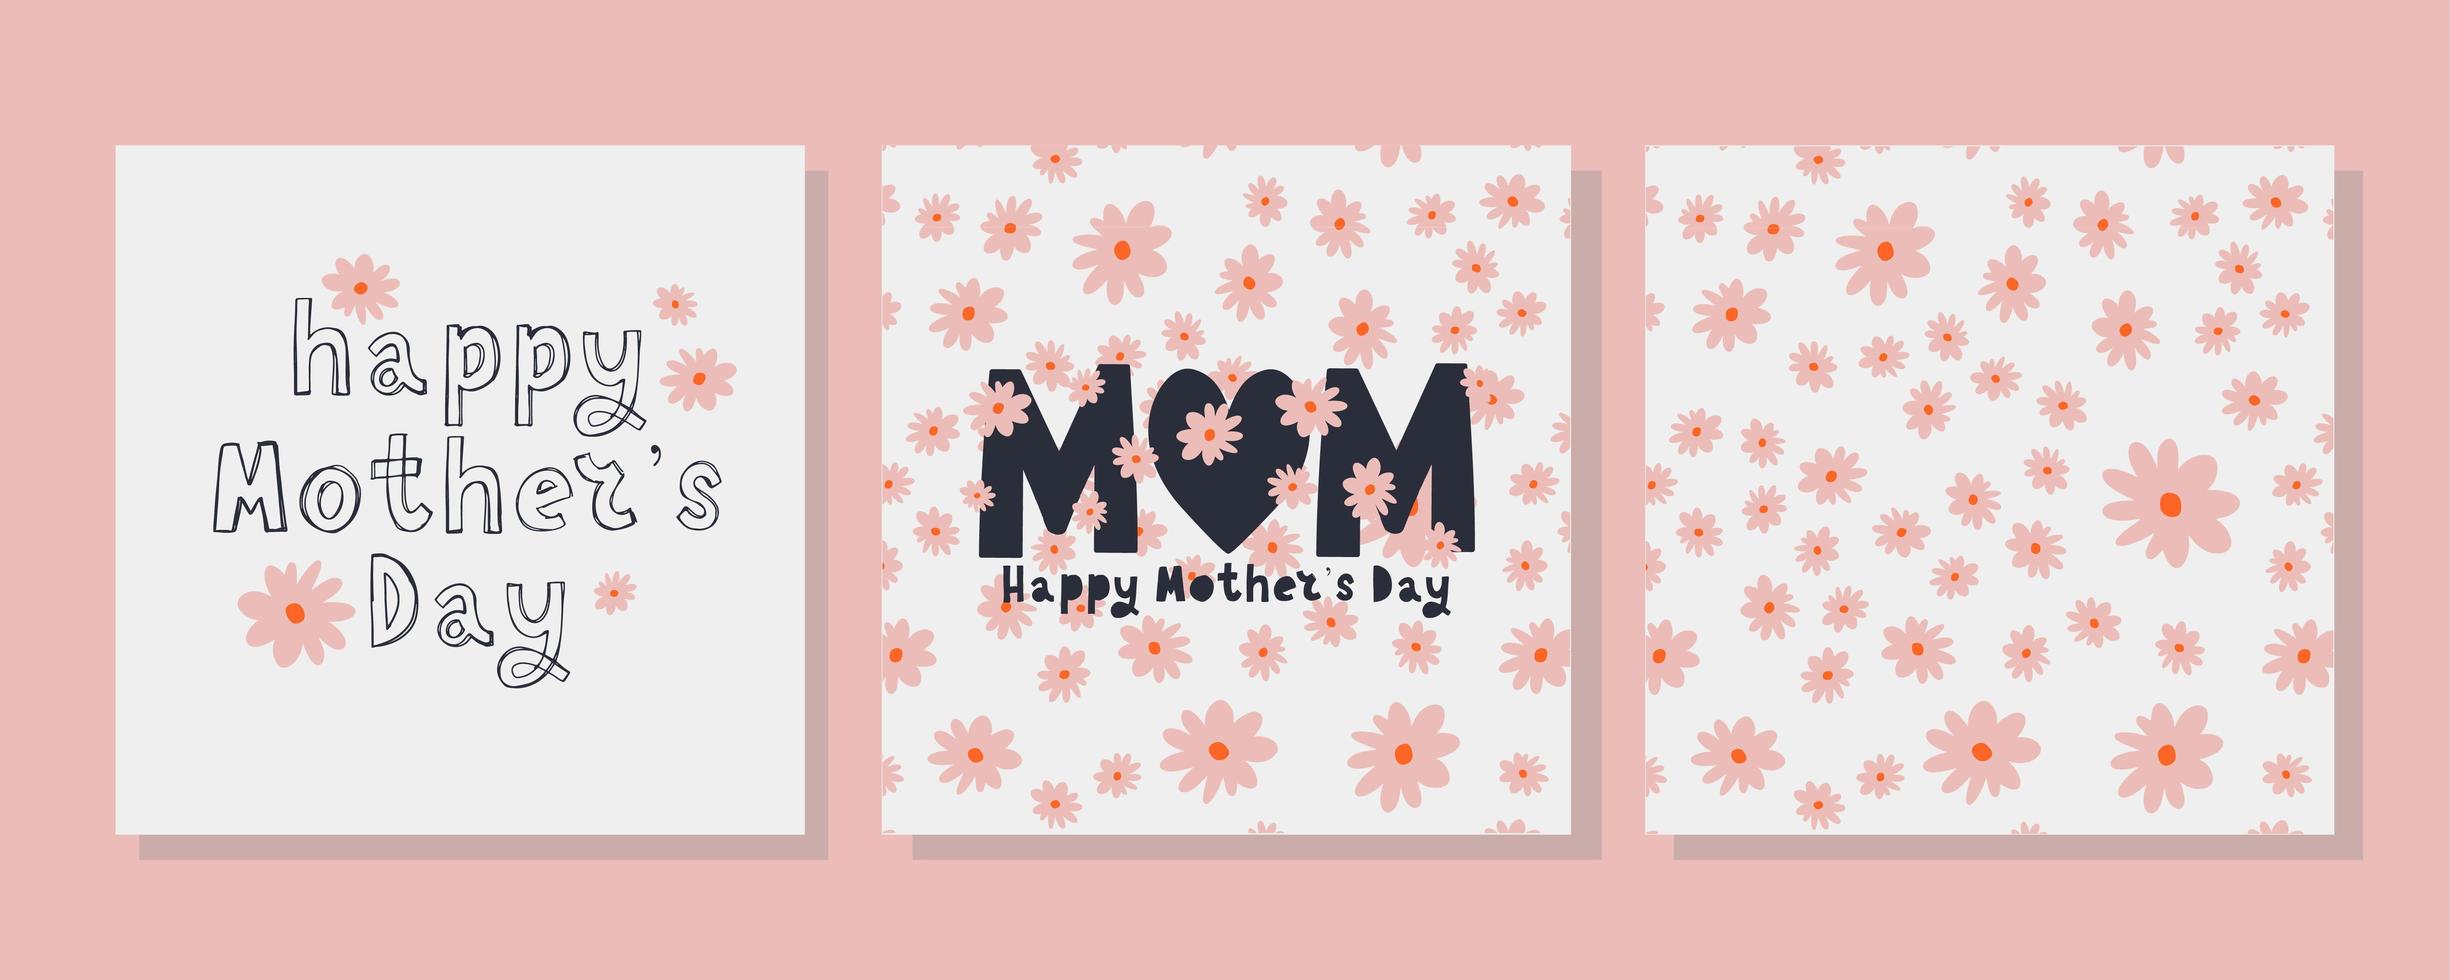 definir cartas para o feliz dia das mães. caligrafia e letras. ilustração vetorial no padrão de flores de fundo branco vetor